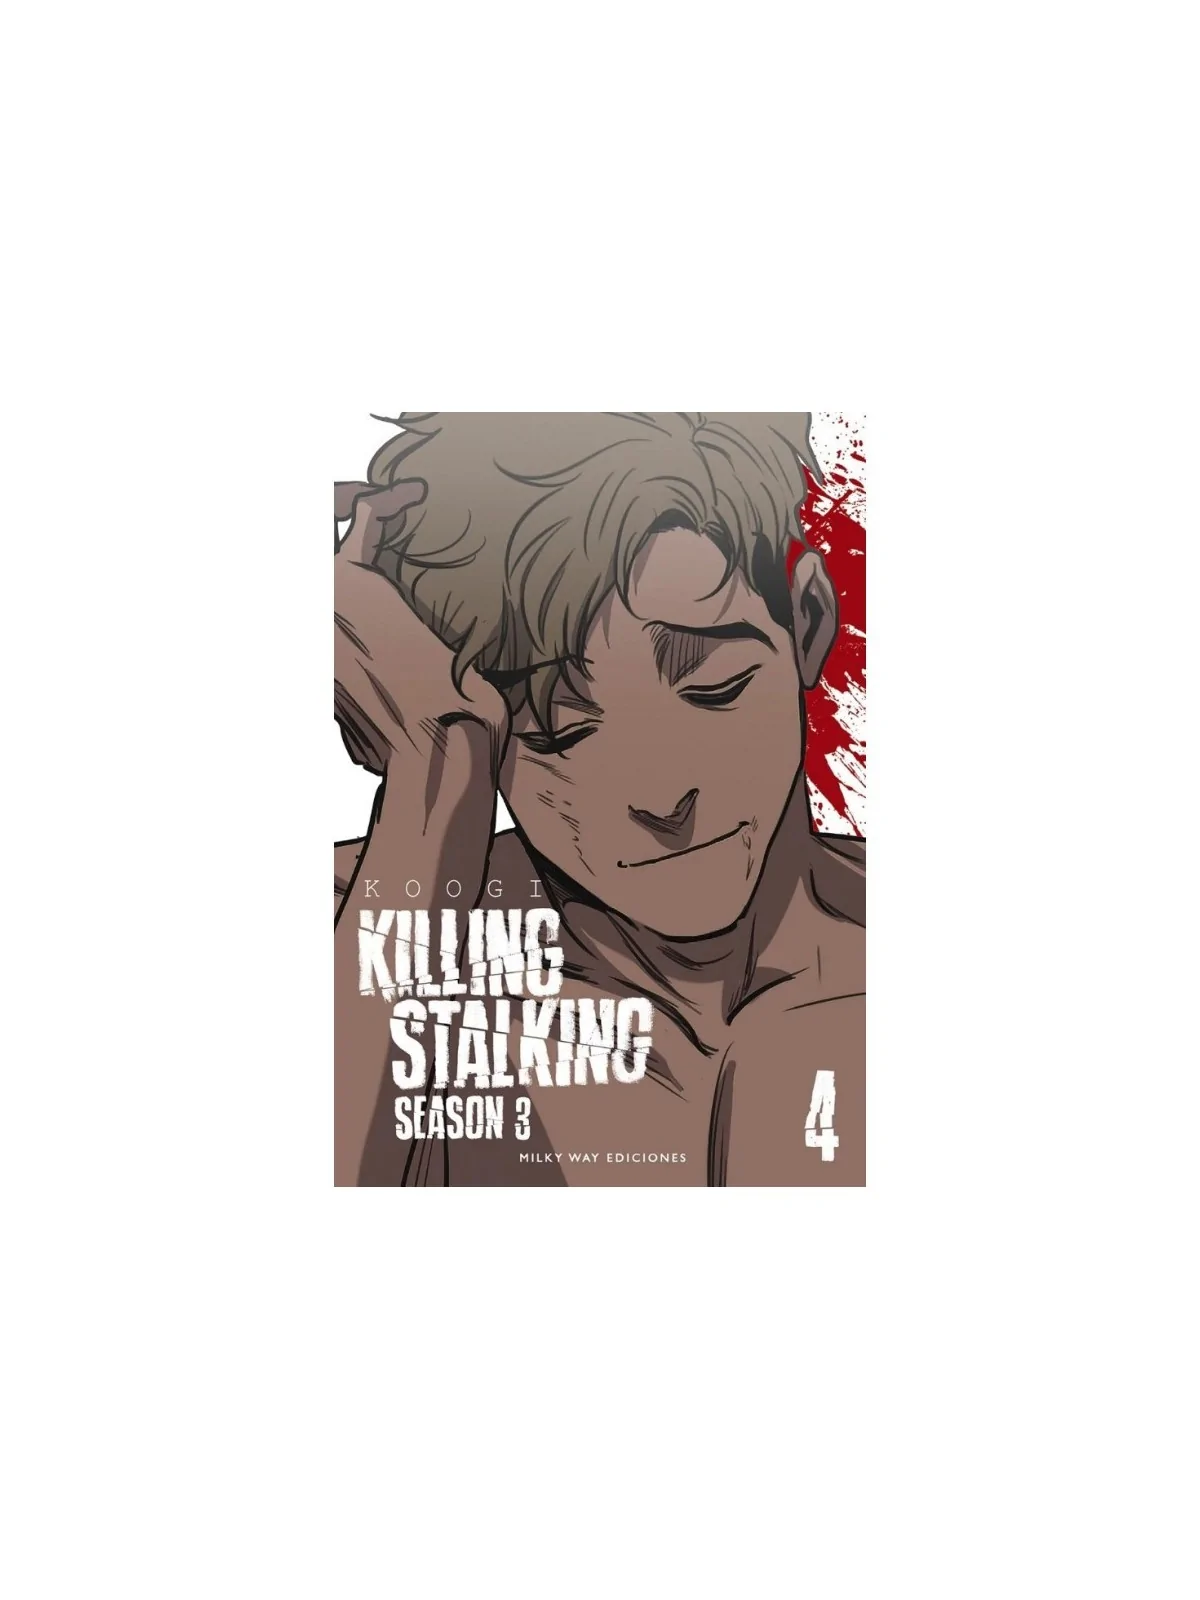 Comprar Killing Stalking Season 3 04 barato al mejor precio 10,45 € de